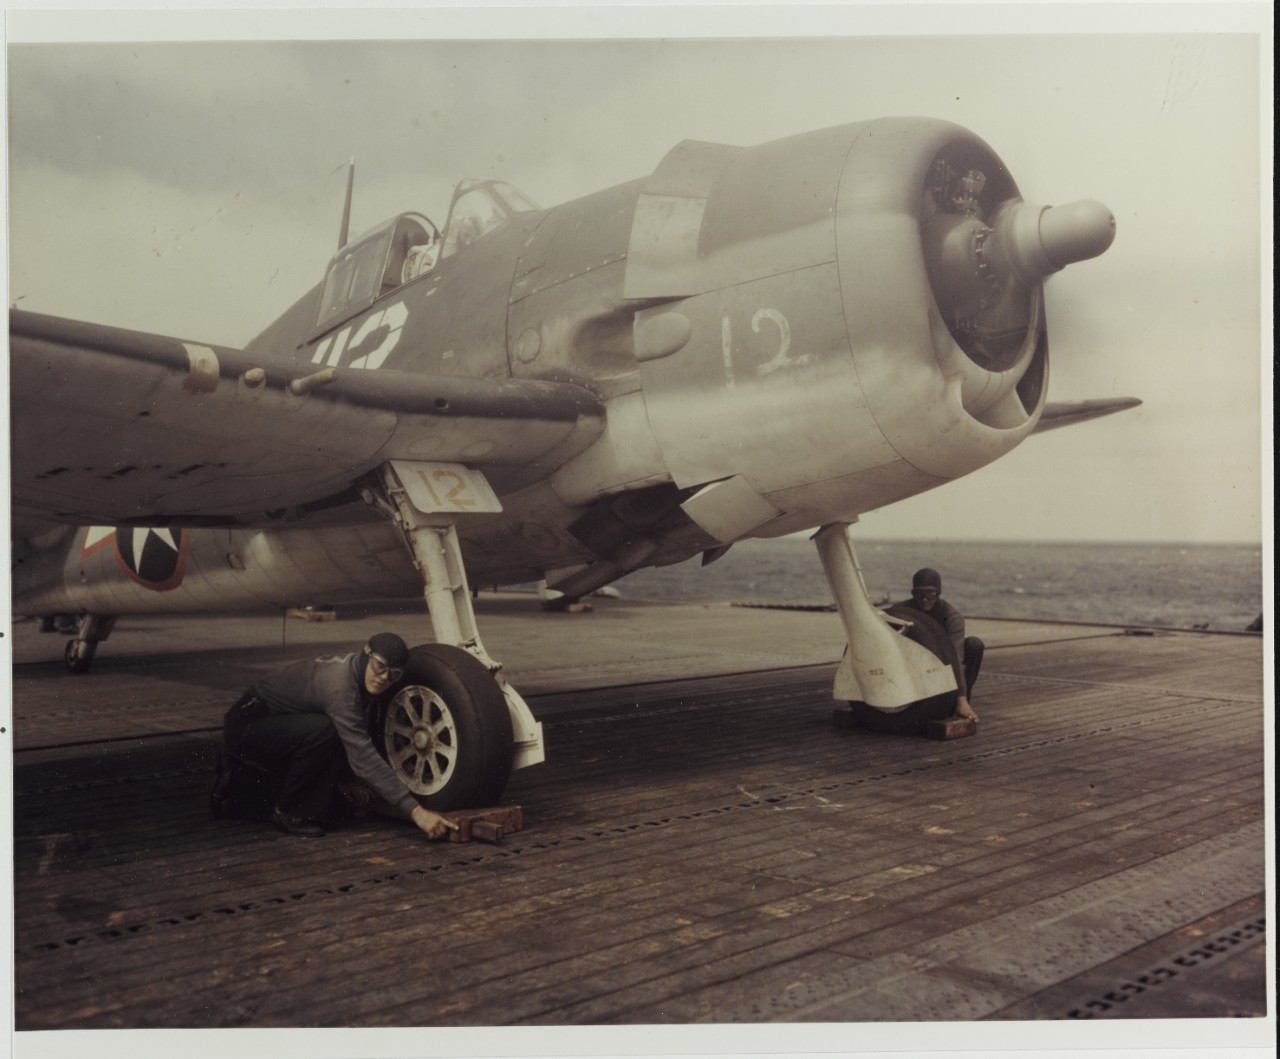 "Chockmen", Grumman F6F-2 "Hellcat", circa mid-1943